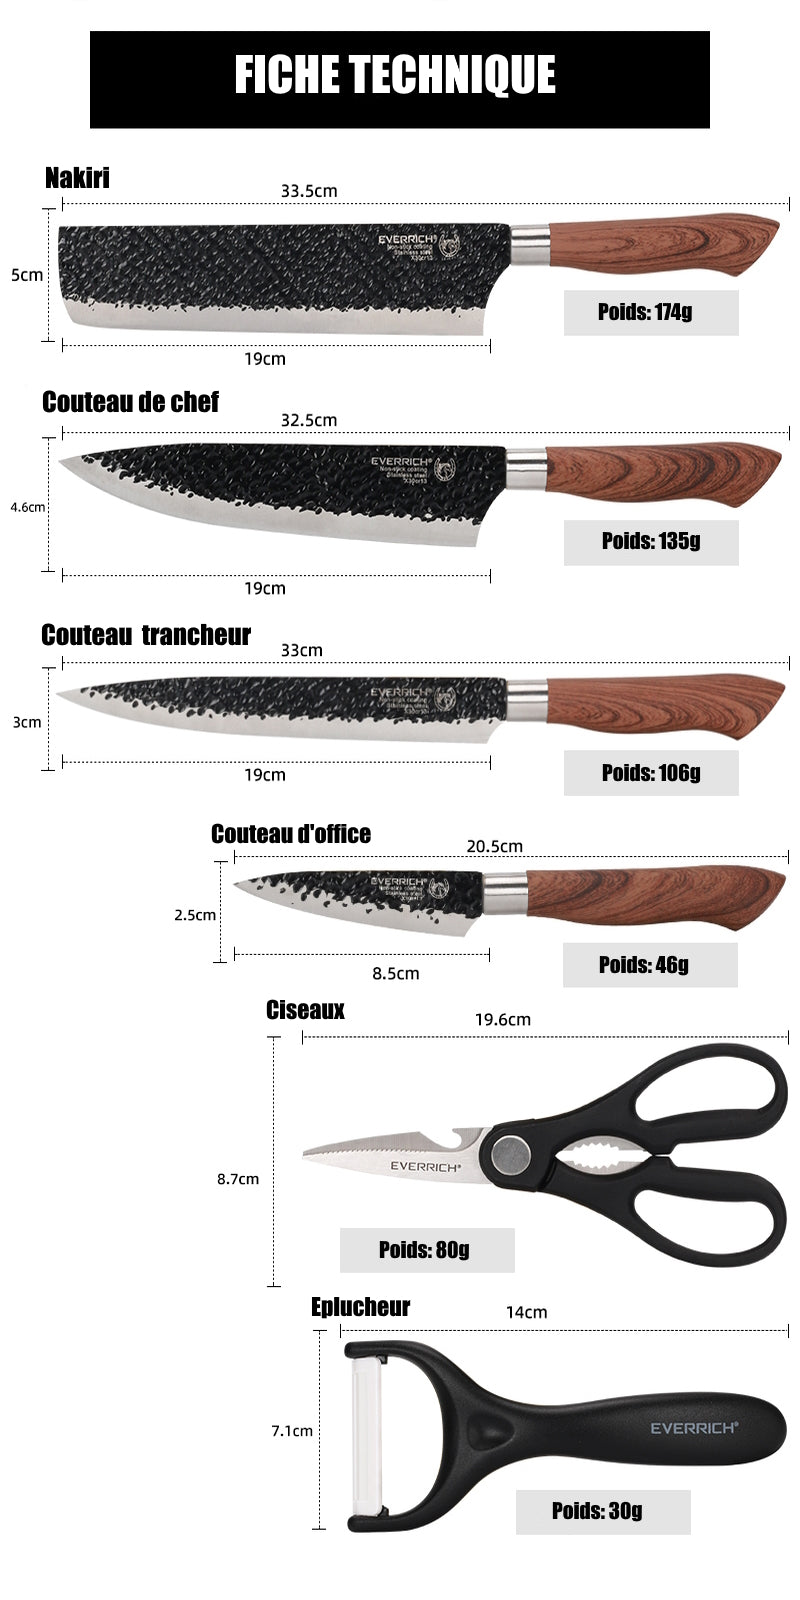 Découvrez les dimensions précises de notre coffret de couteaux de cuisine japonais tout-en-un de haute qualité. Le Nakiri mesure 33.5 cm pour un poids de 174g, le couteau de chef mesure 32.5 cm pour un poids de 135g, le couteau à trancher mesure 33 cm pour un poids de 106g, le couteau d’office mesure 20.5 cm pour un poids de 46g, la paire de ciseaux mesure 19.6 cm pour un poids de 80g et l'éplucheur mesure 14 cm pour un poids de 30g. 